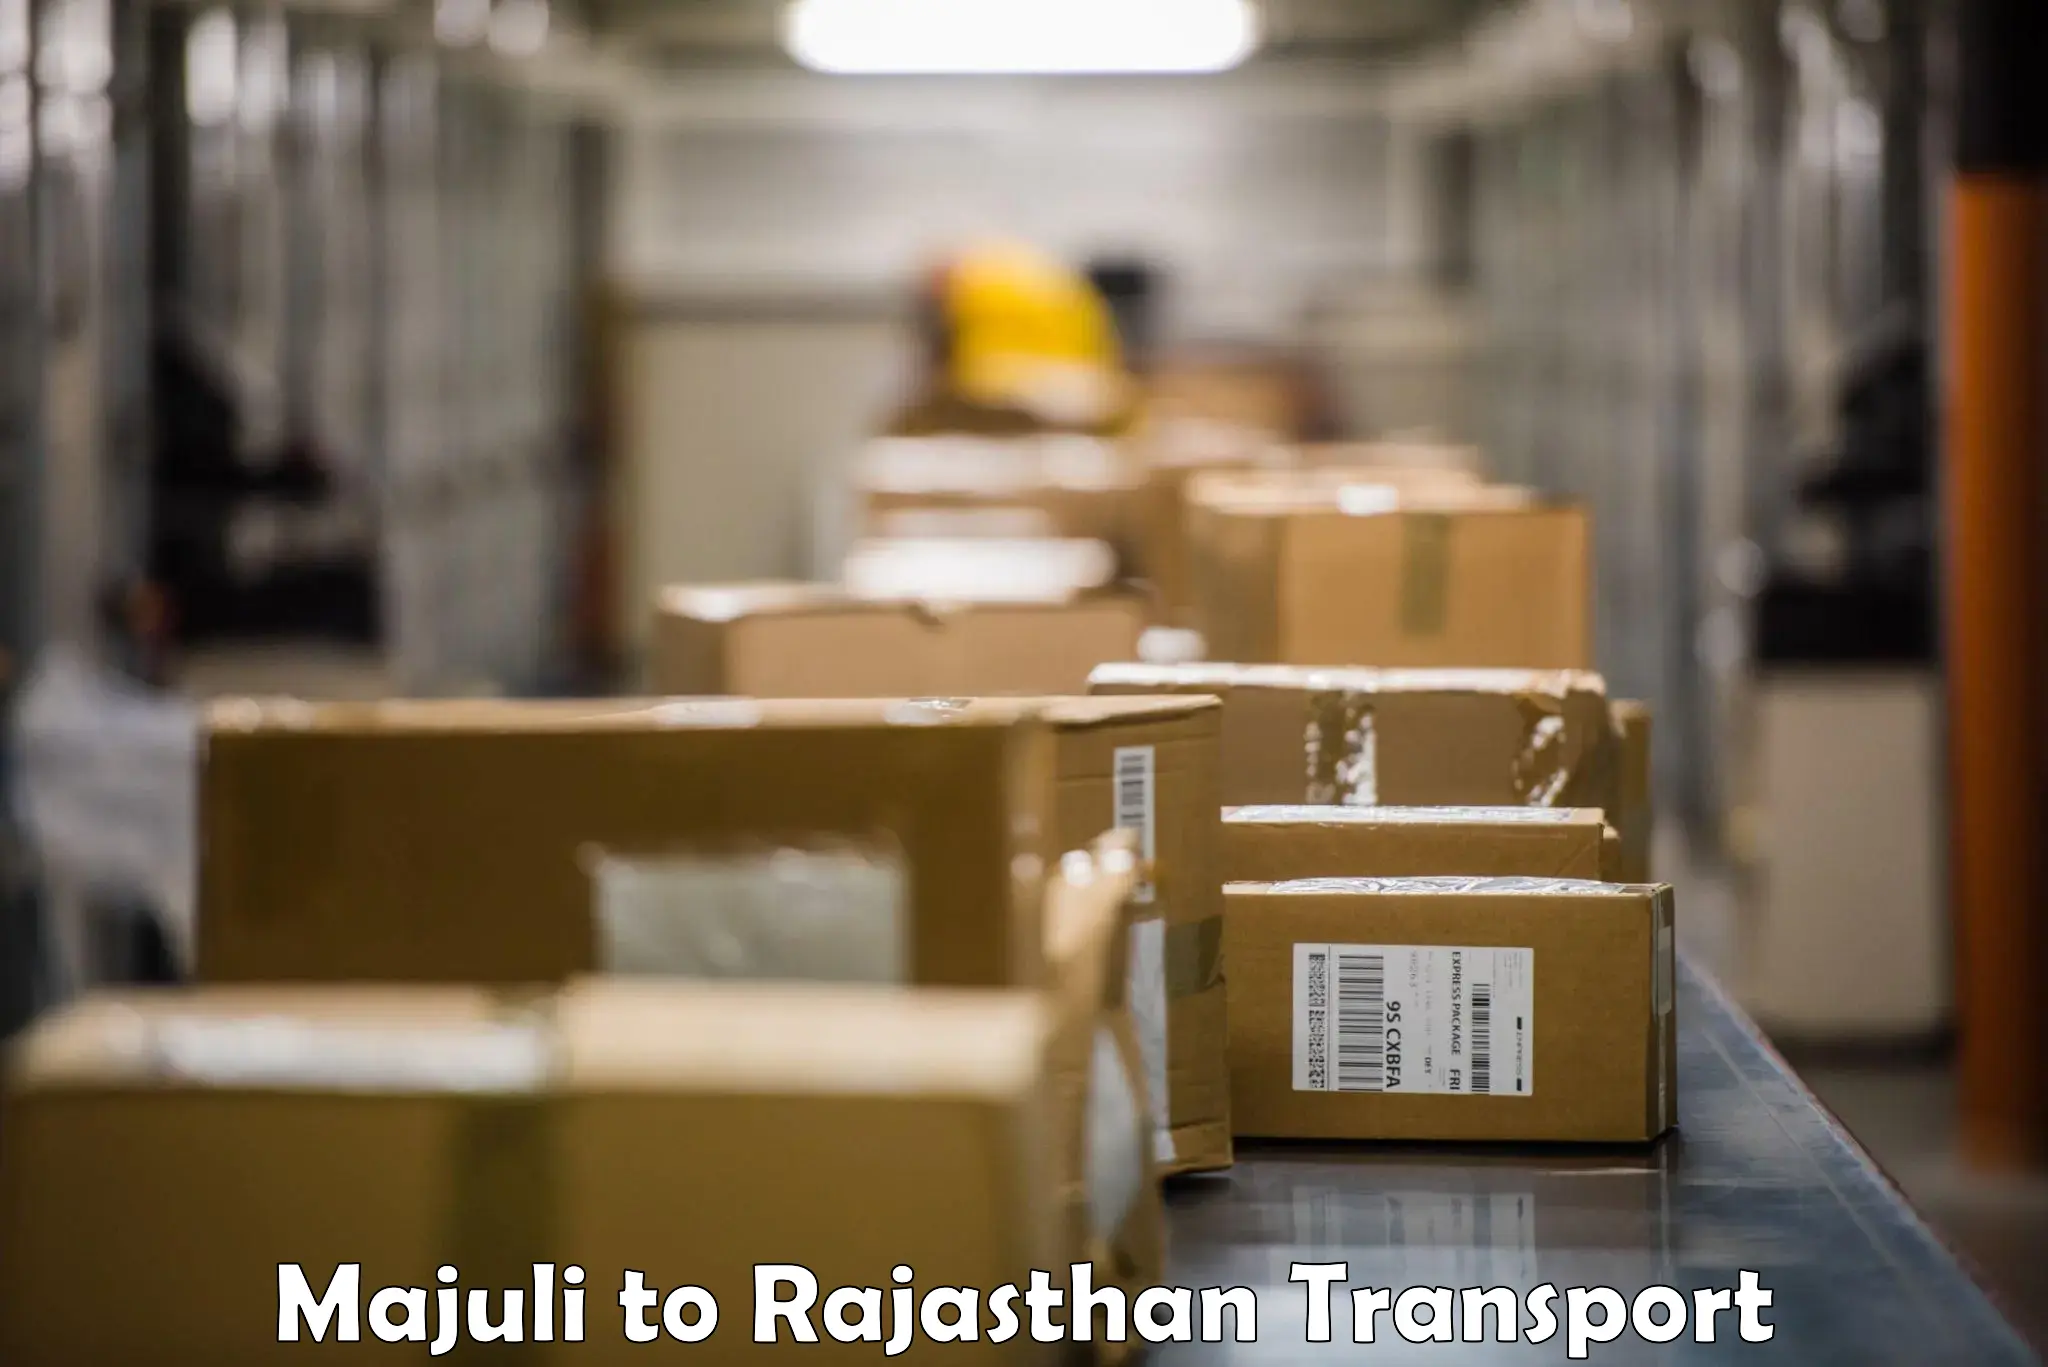 Container transport service Majuli to Pratapgarh Rajasthan